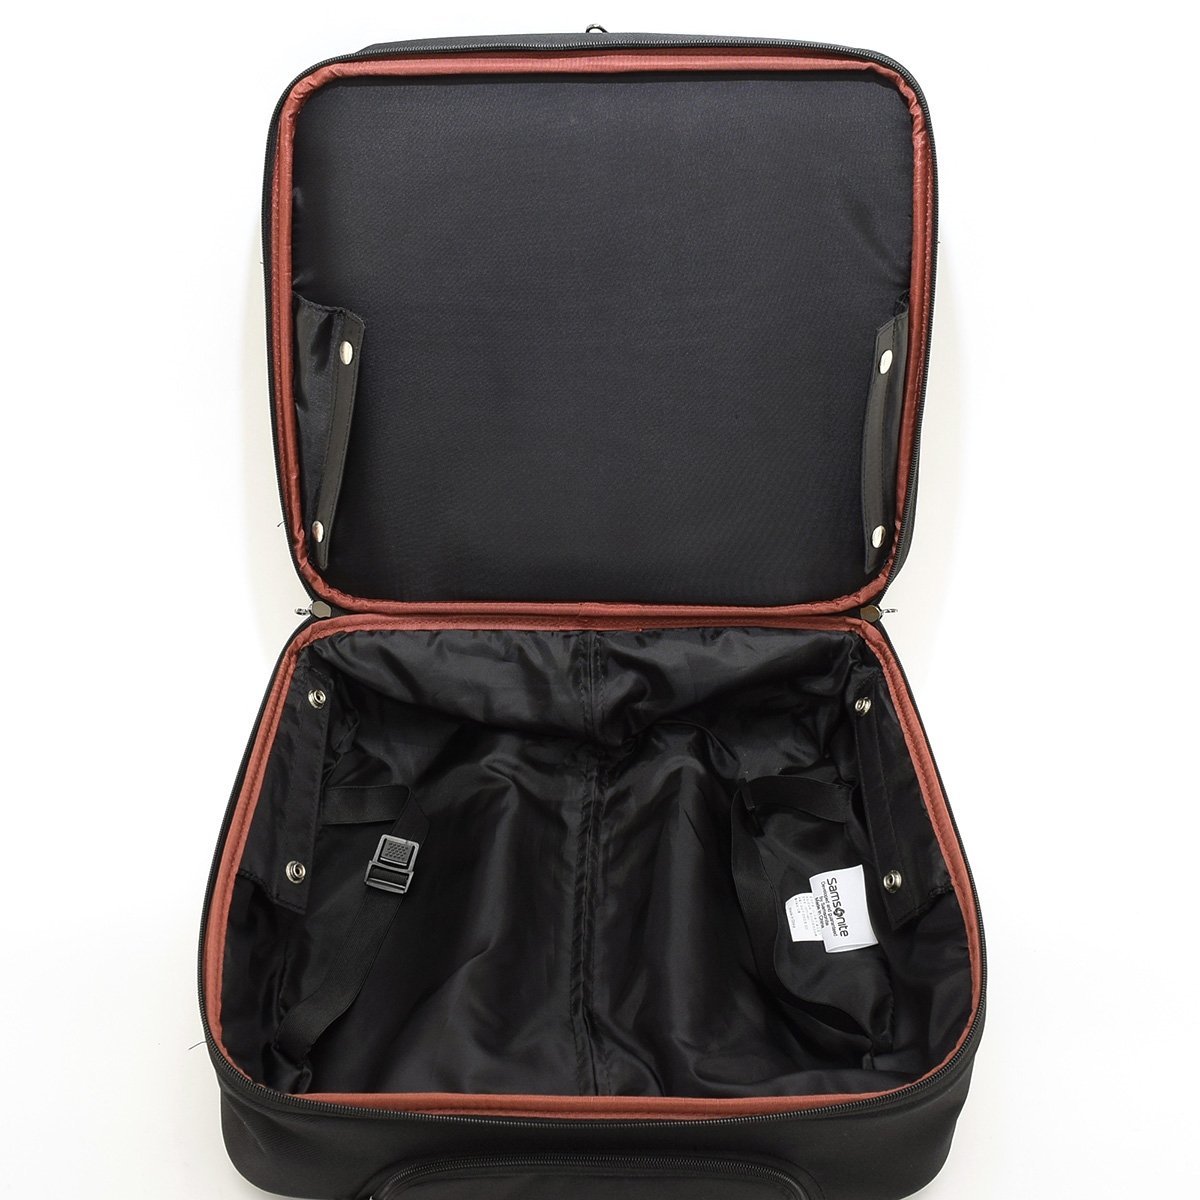 ◆494693 SAMSONITE サムソナイト スーツケース キャリーバッグ ブリーフケース スーツケース 書類カバン ビジネスバッグ メンズ ブラック_画像6